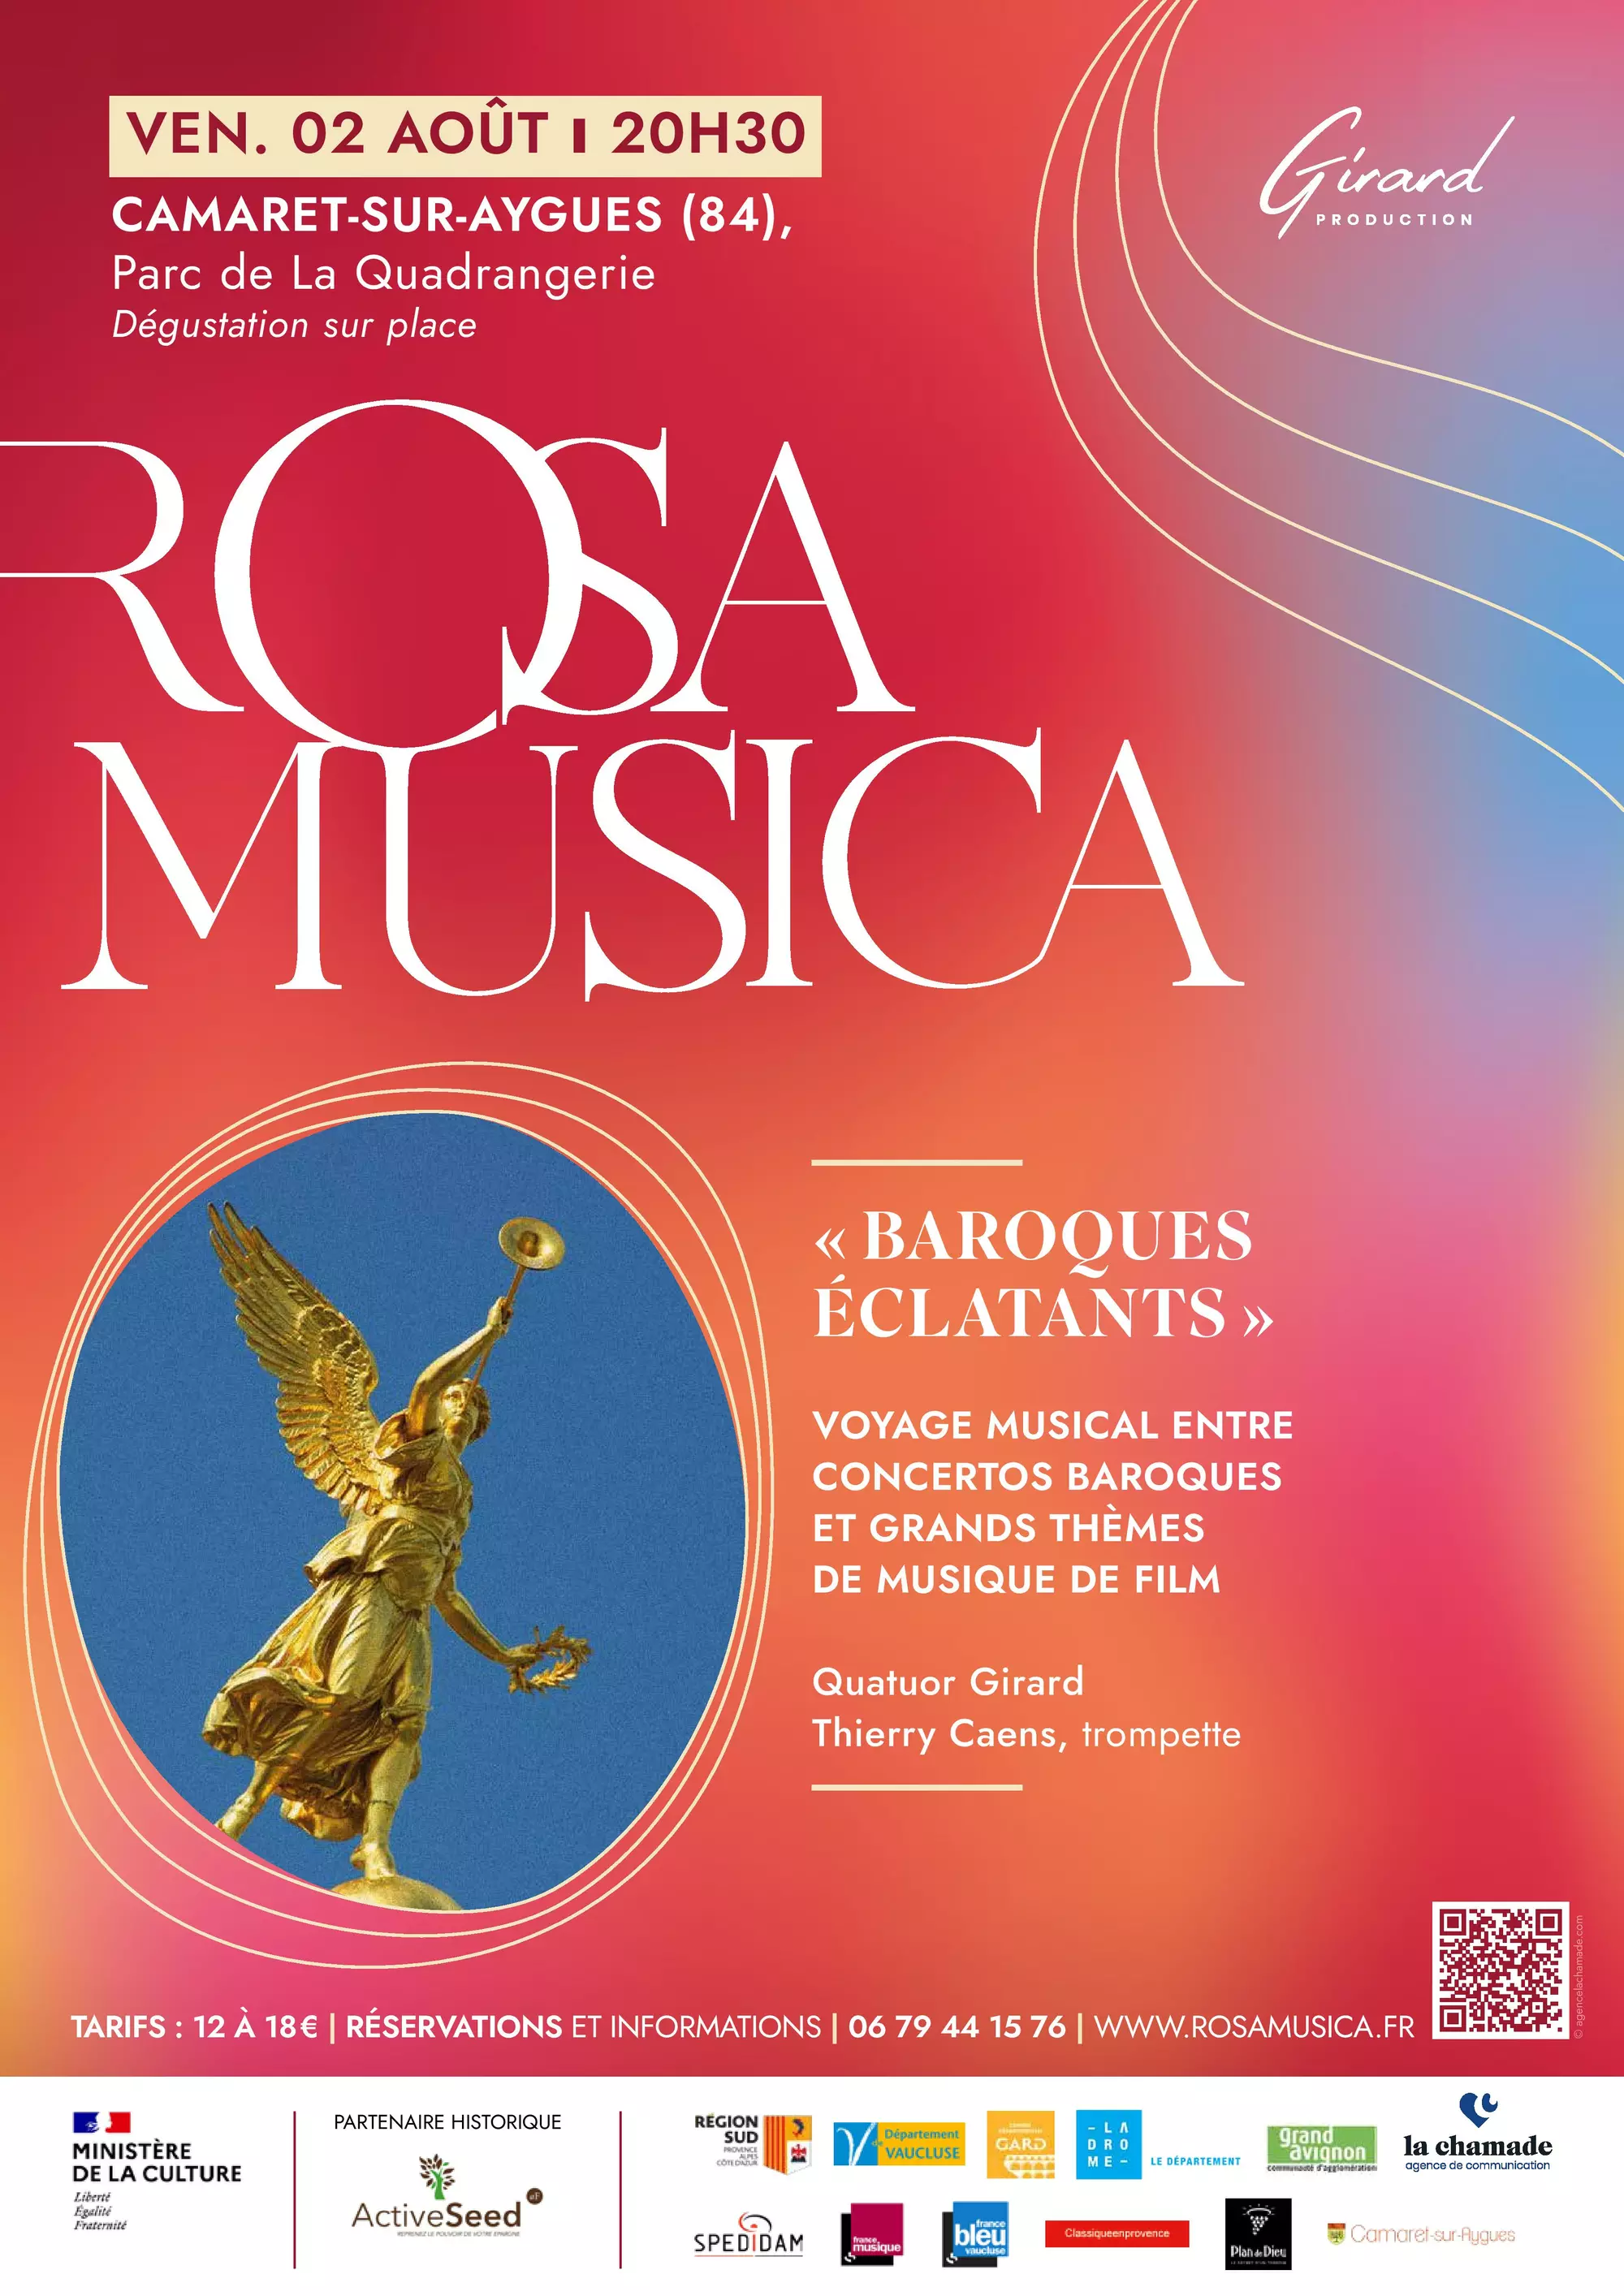 « Baroques éclatants » : 5ème édition de Rosa Musica le vendredi 2 août 2024 à 20h30 dans le parc de la Quadrangerie (2, avenue des Princes d'Orange - Camaret)